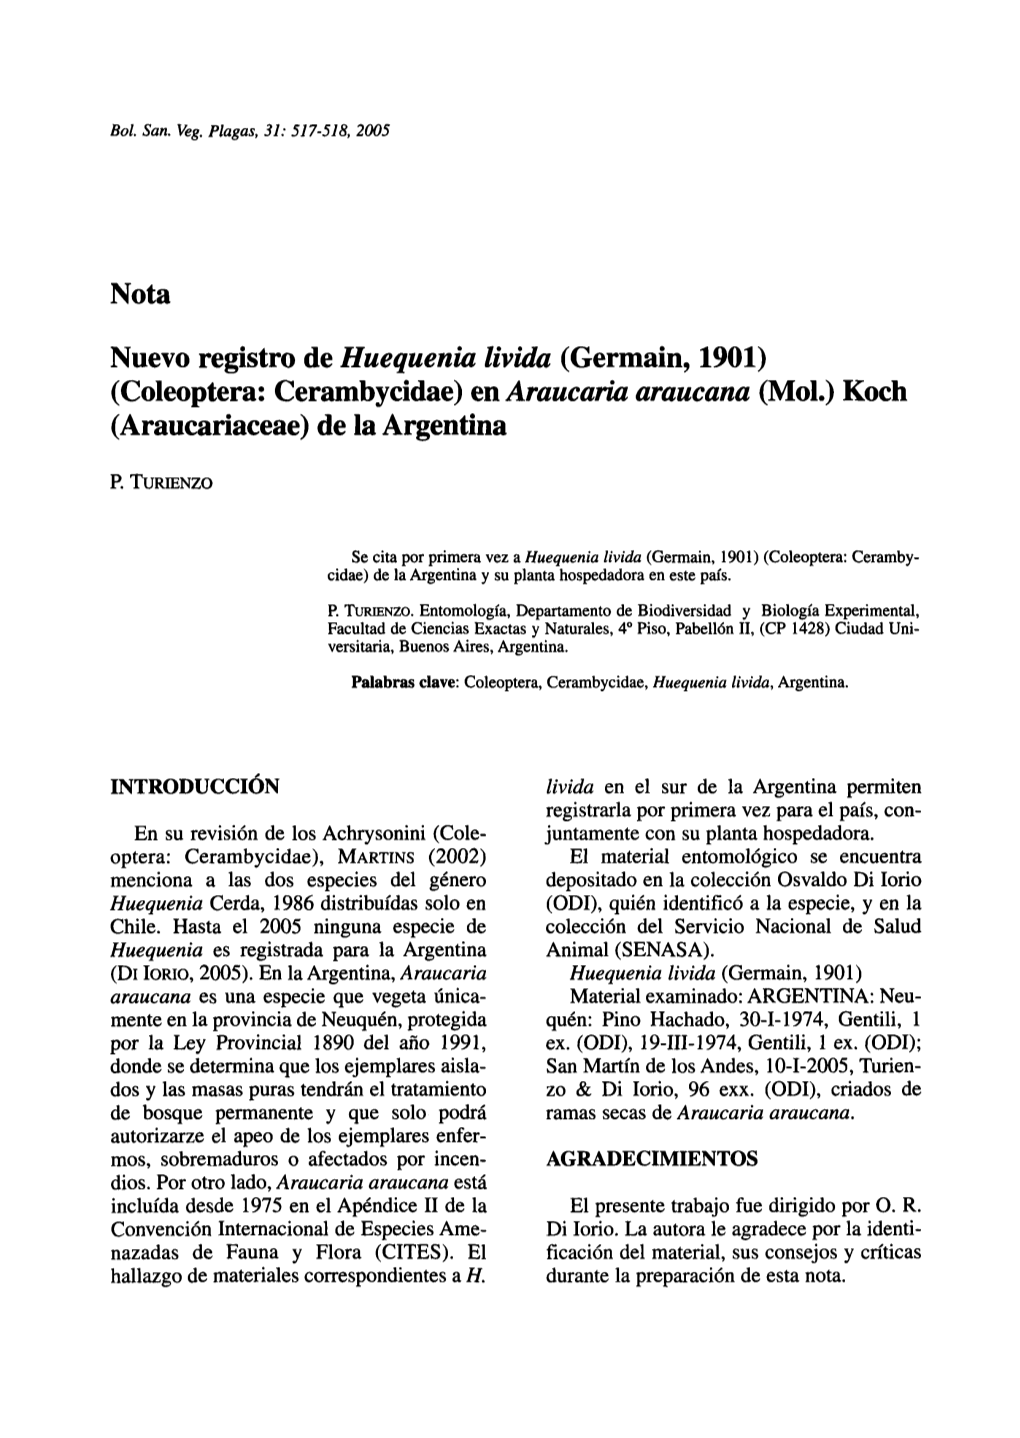 Nota Nuevo Registro De Huequenia Lívida (Germain, 1901) (Coleoptera